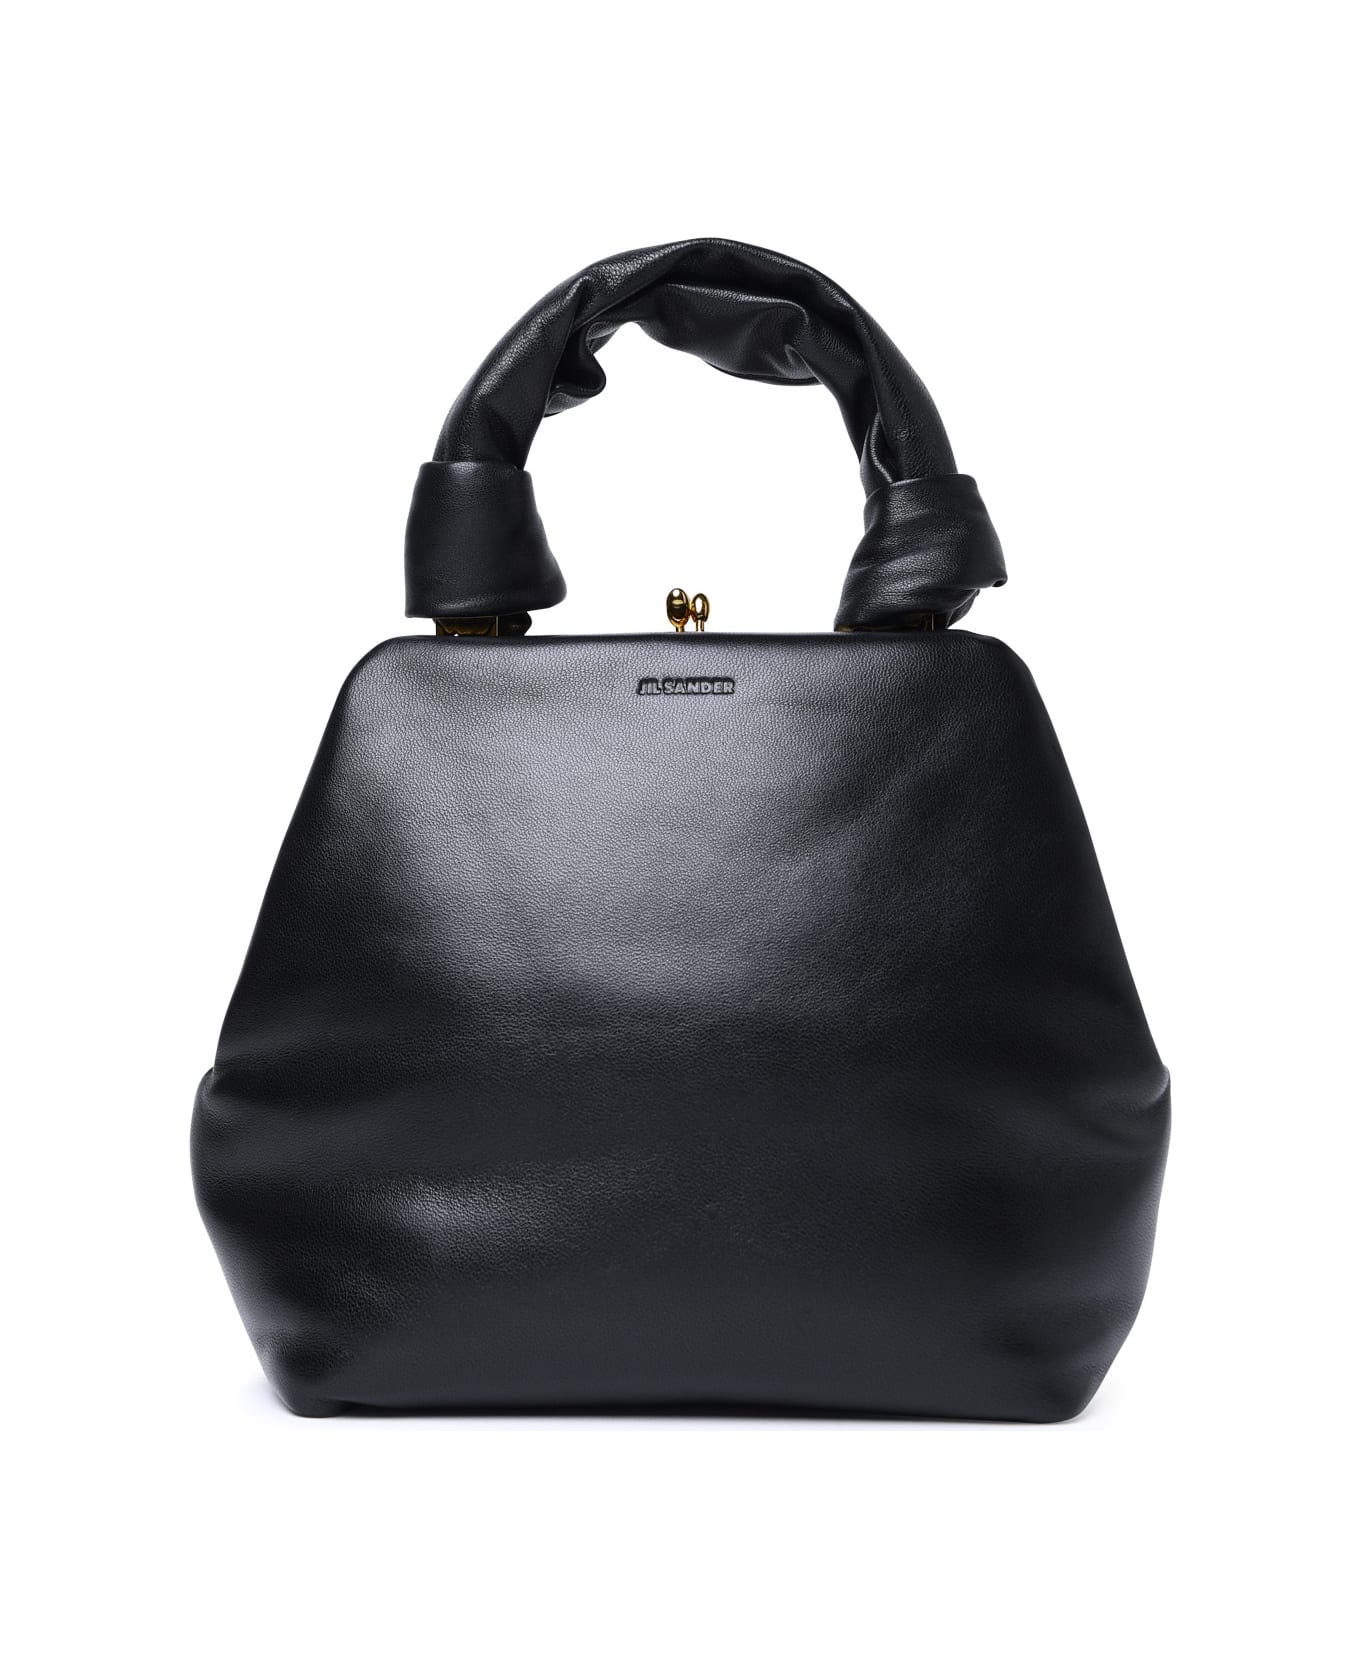 Jil Sander 'goji Square' Small Black Leather Bag - Black トートバッグ